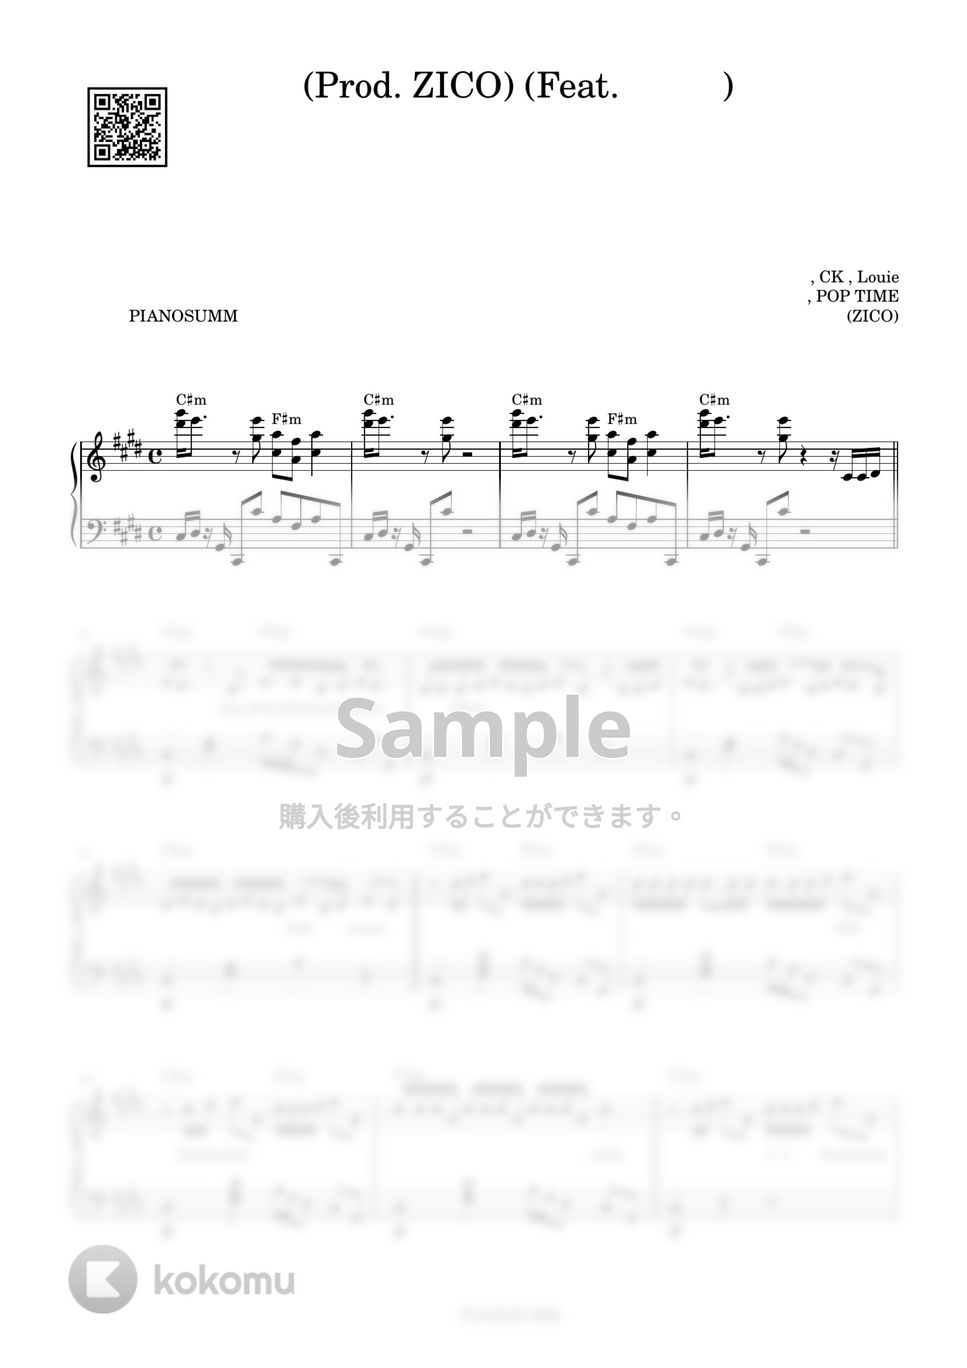 지코 (ZICO) - 새삥 (Prod. ZICO) (Feat. 호미들) (verse 1) by PIANOSUMM